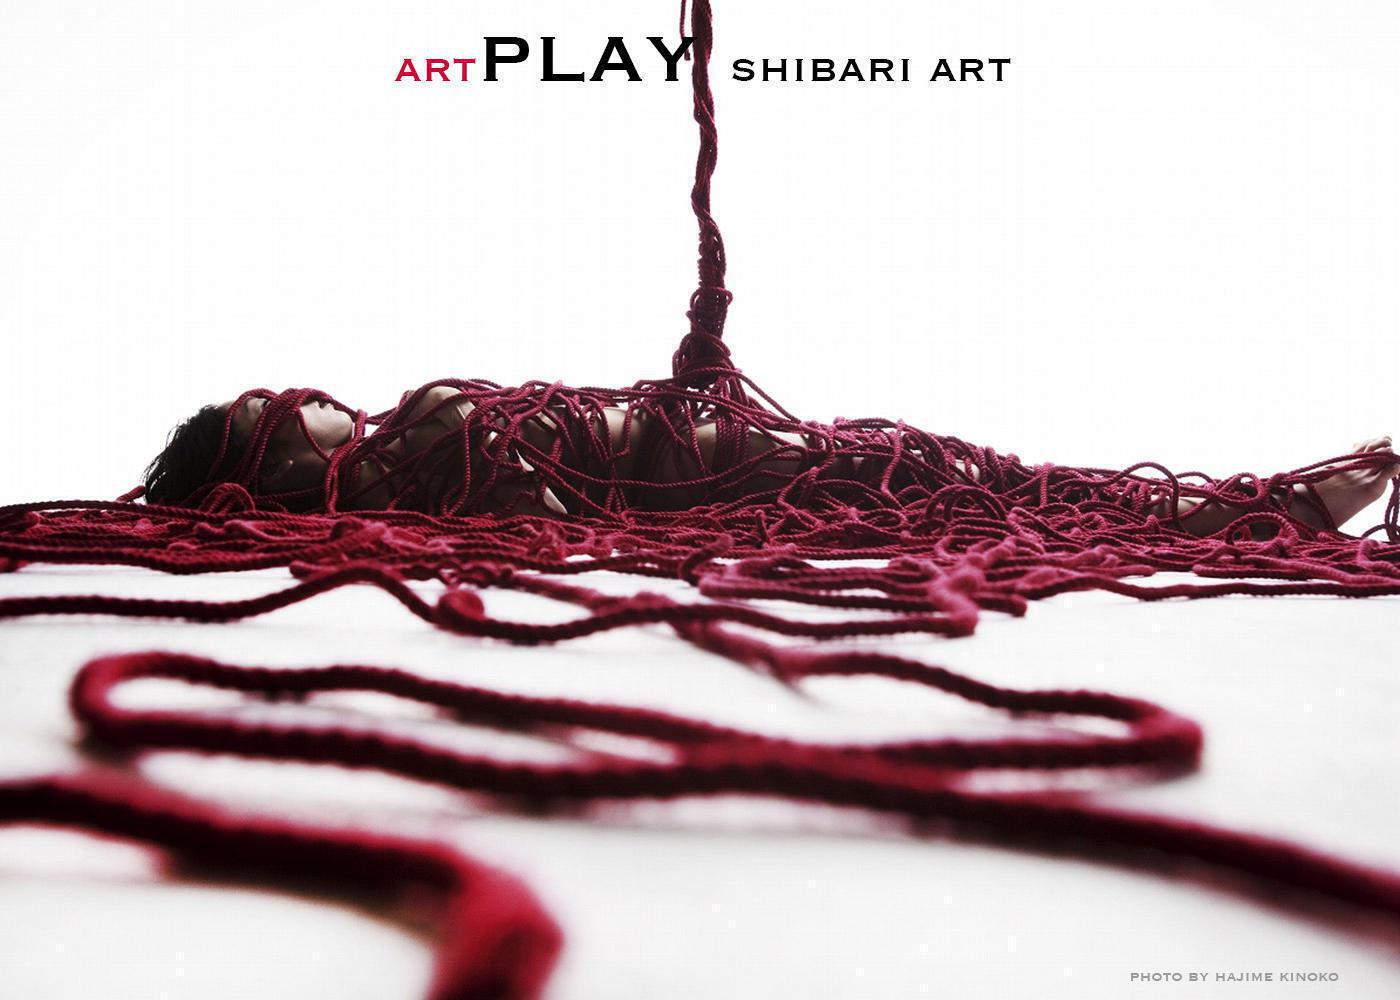 Shibari art